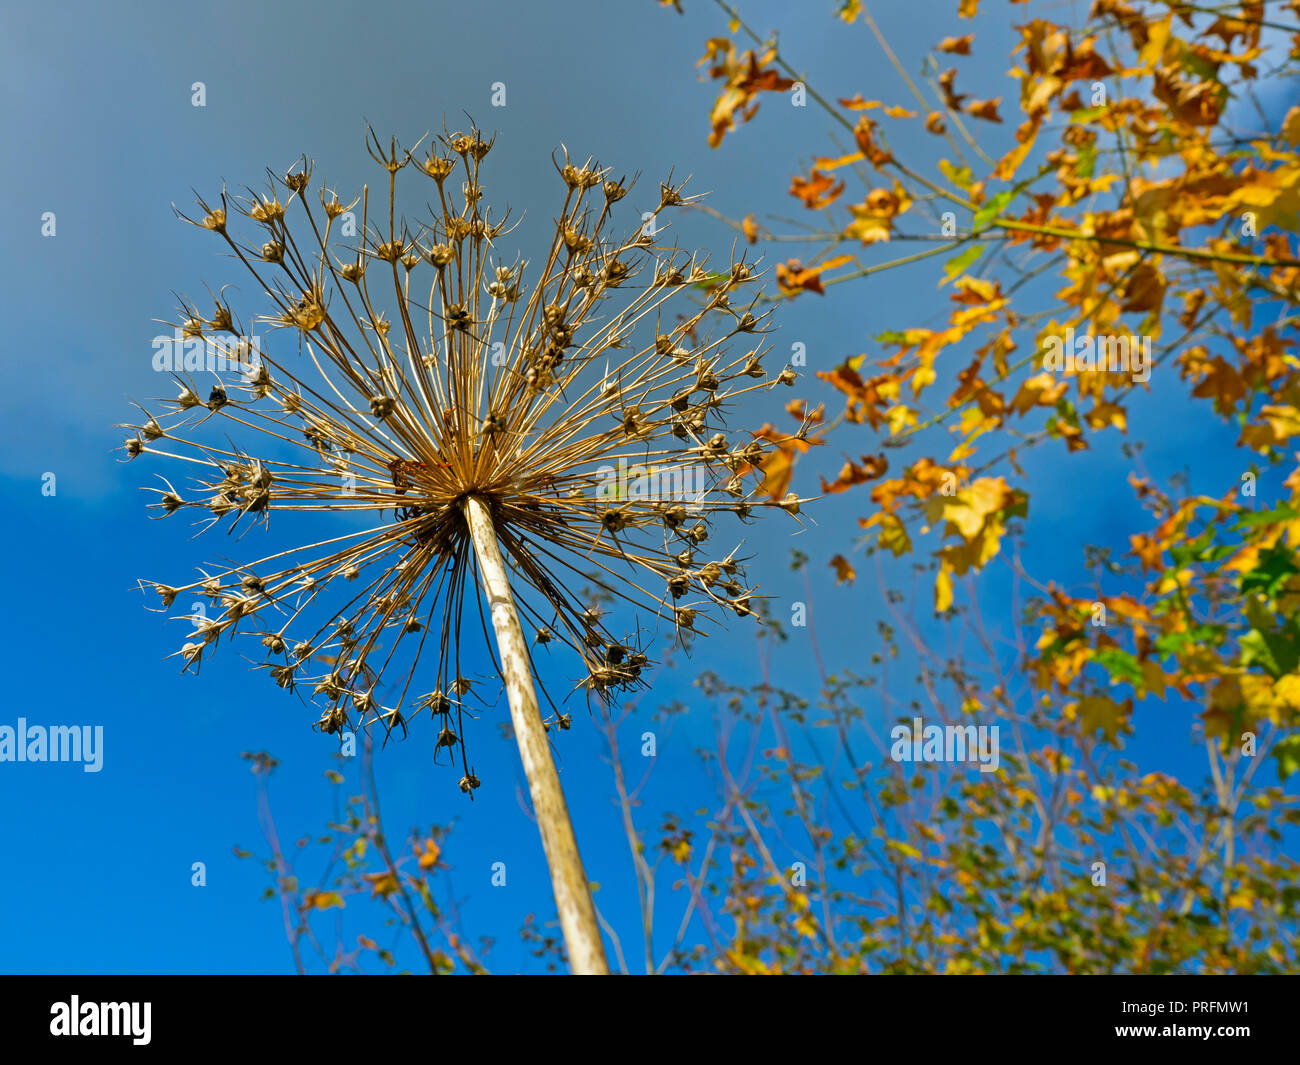 Allium Samen Kopf im Herbst Blätter im Herbst im Hintergrund Stockfoto